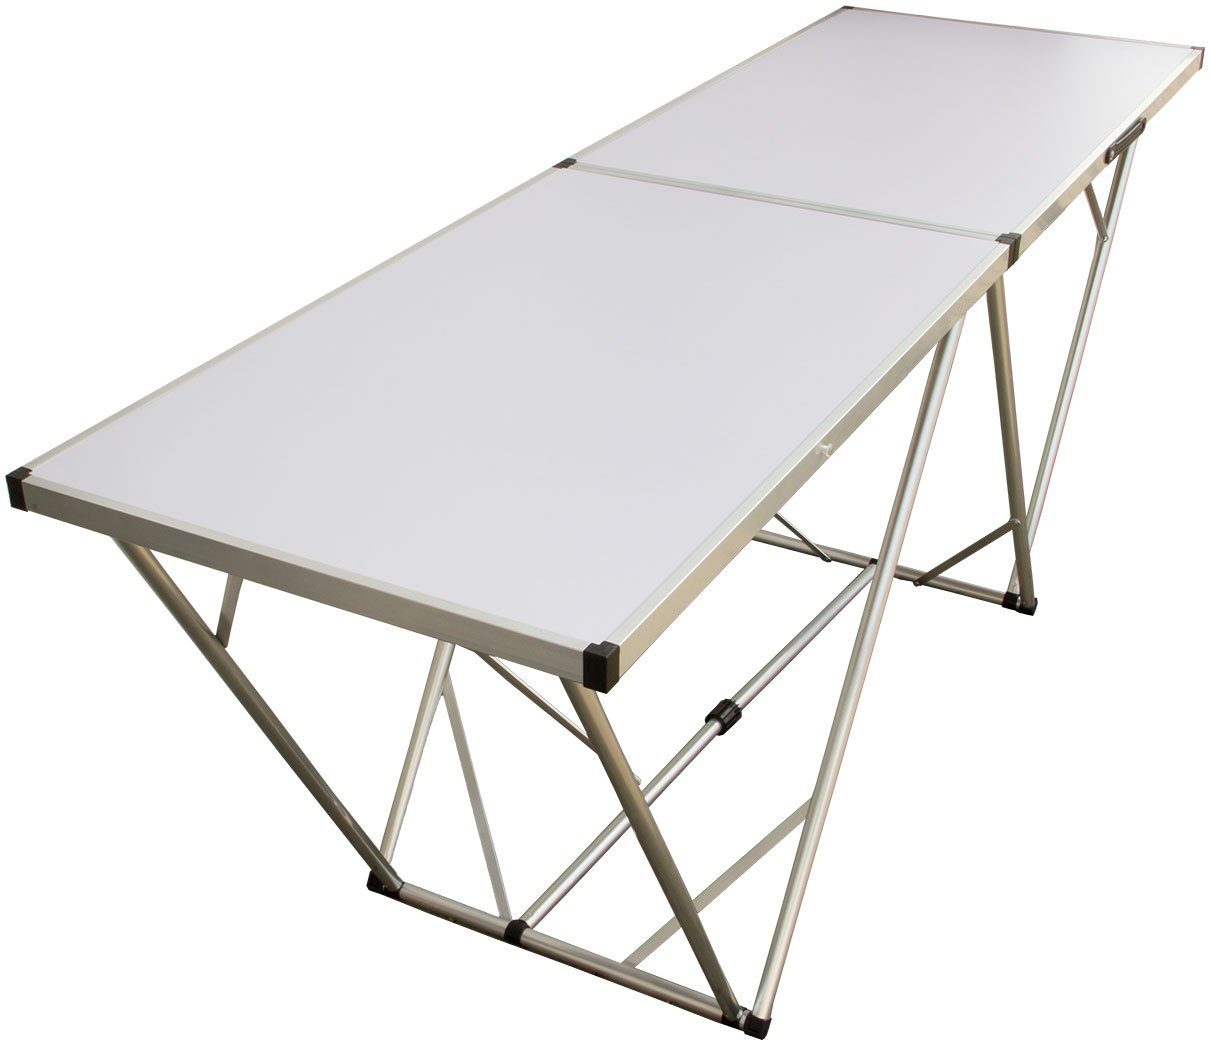 Lemodo Multifunktionstisch, Partytisch, Flohmarkttisch, Klapptisch, Mehrzwecktisch, 200x60cm, weiß